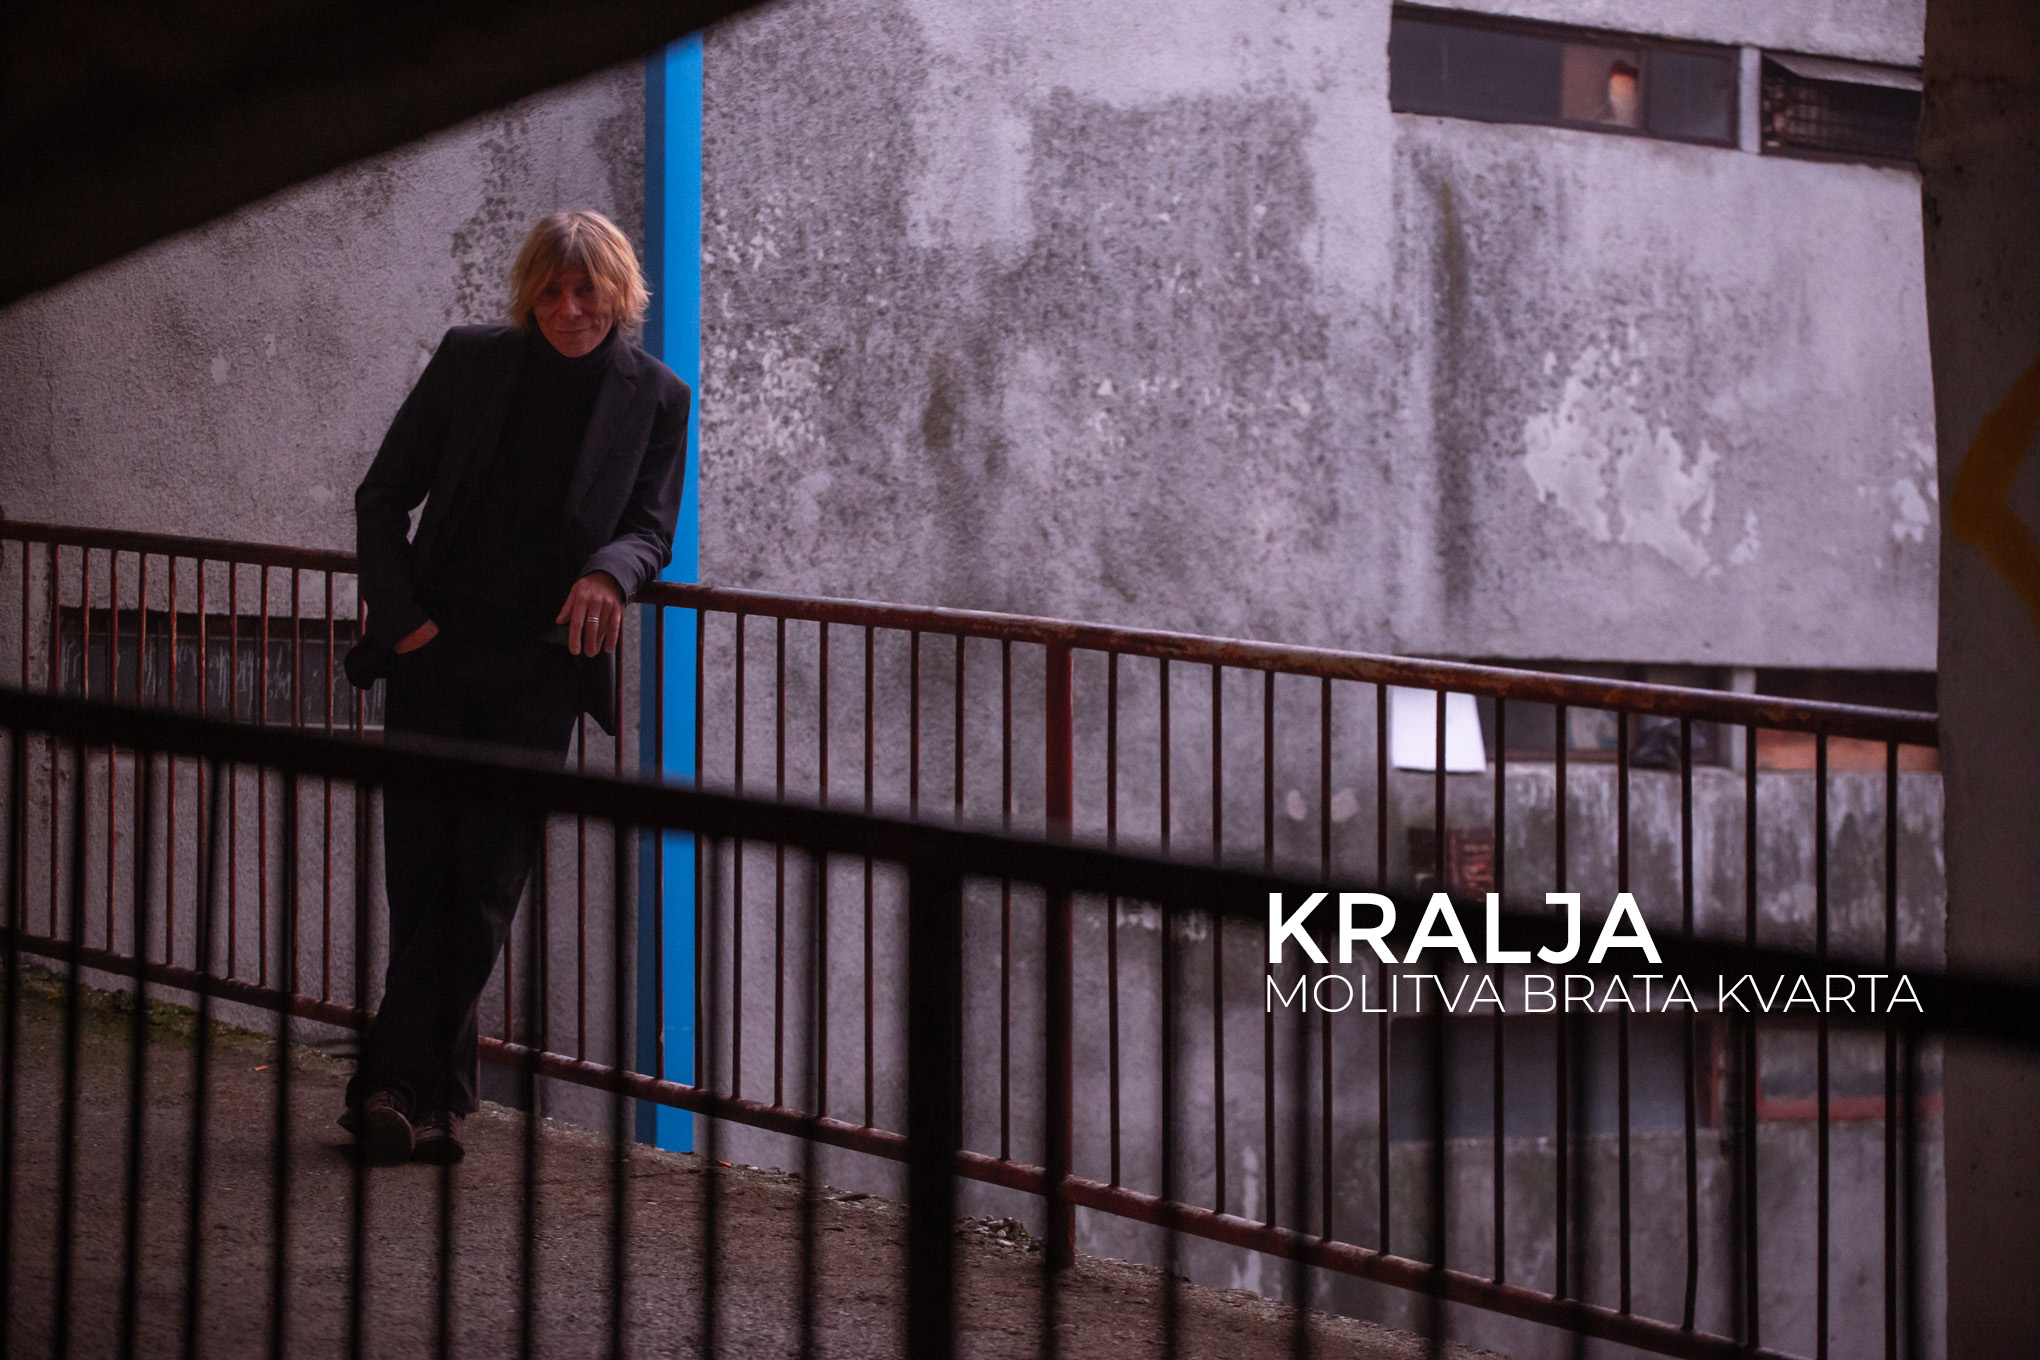 You are currently viewing Legendarni gitarist Kralja predstavlja predivan božićni singl “Molitva brata kvarta” i prateći video spot